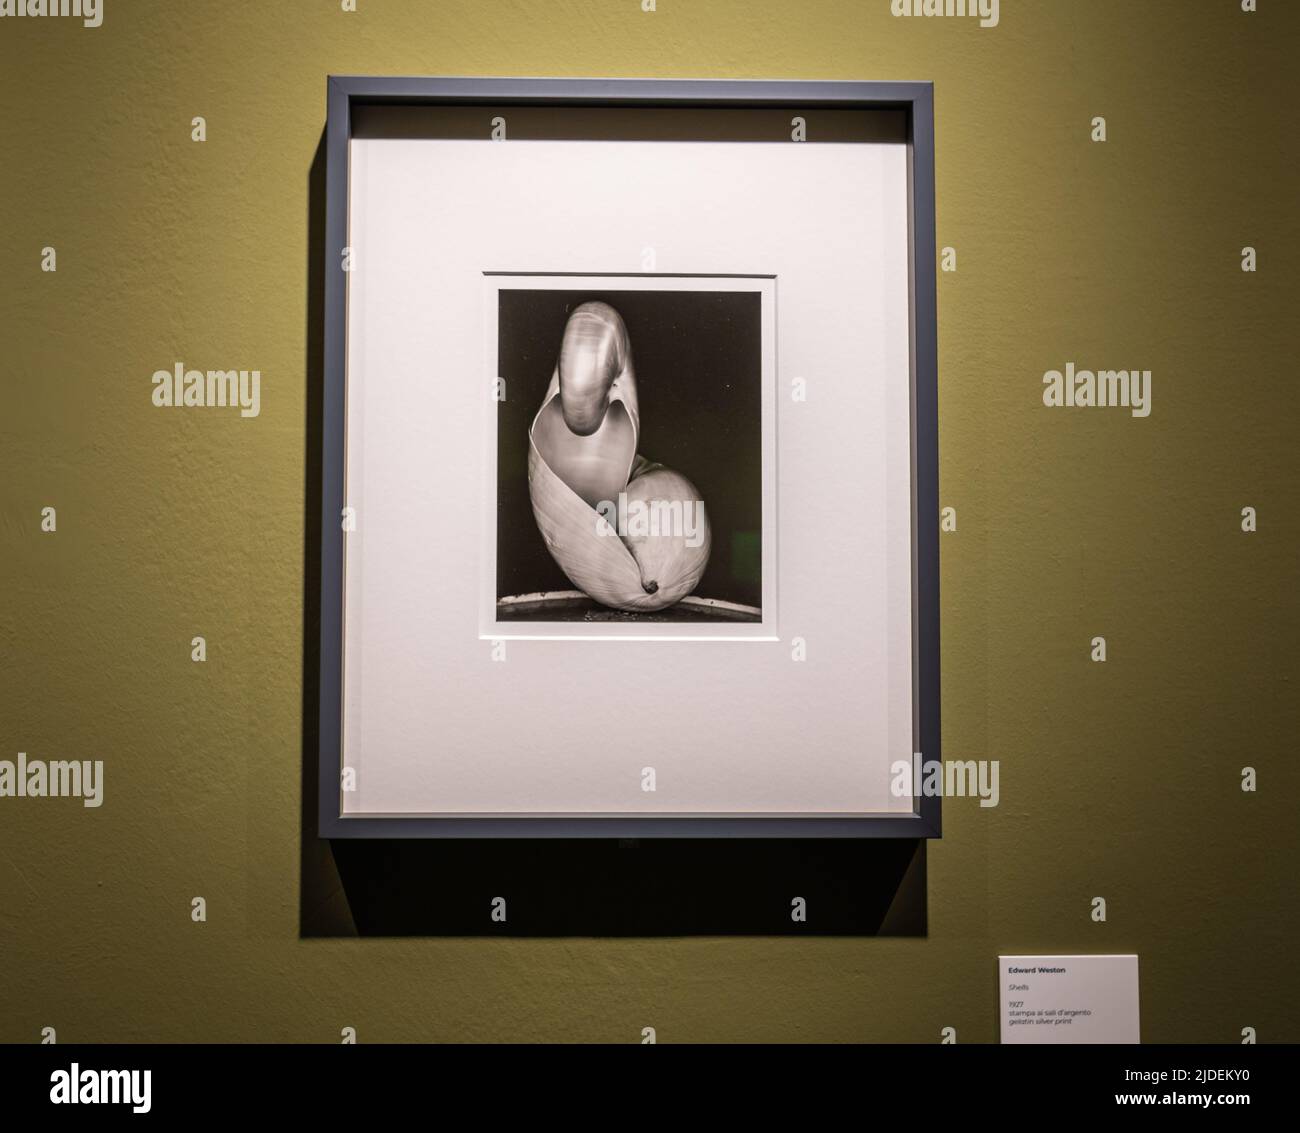 Edward weston (1886-1958) célèbre photographie 'SHELLS' - 1927. Exposition au Musée Santa Giulia de Brescia, lombardie, Italie, Europe. Banque D'Images